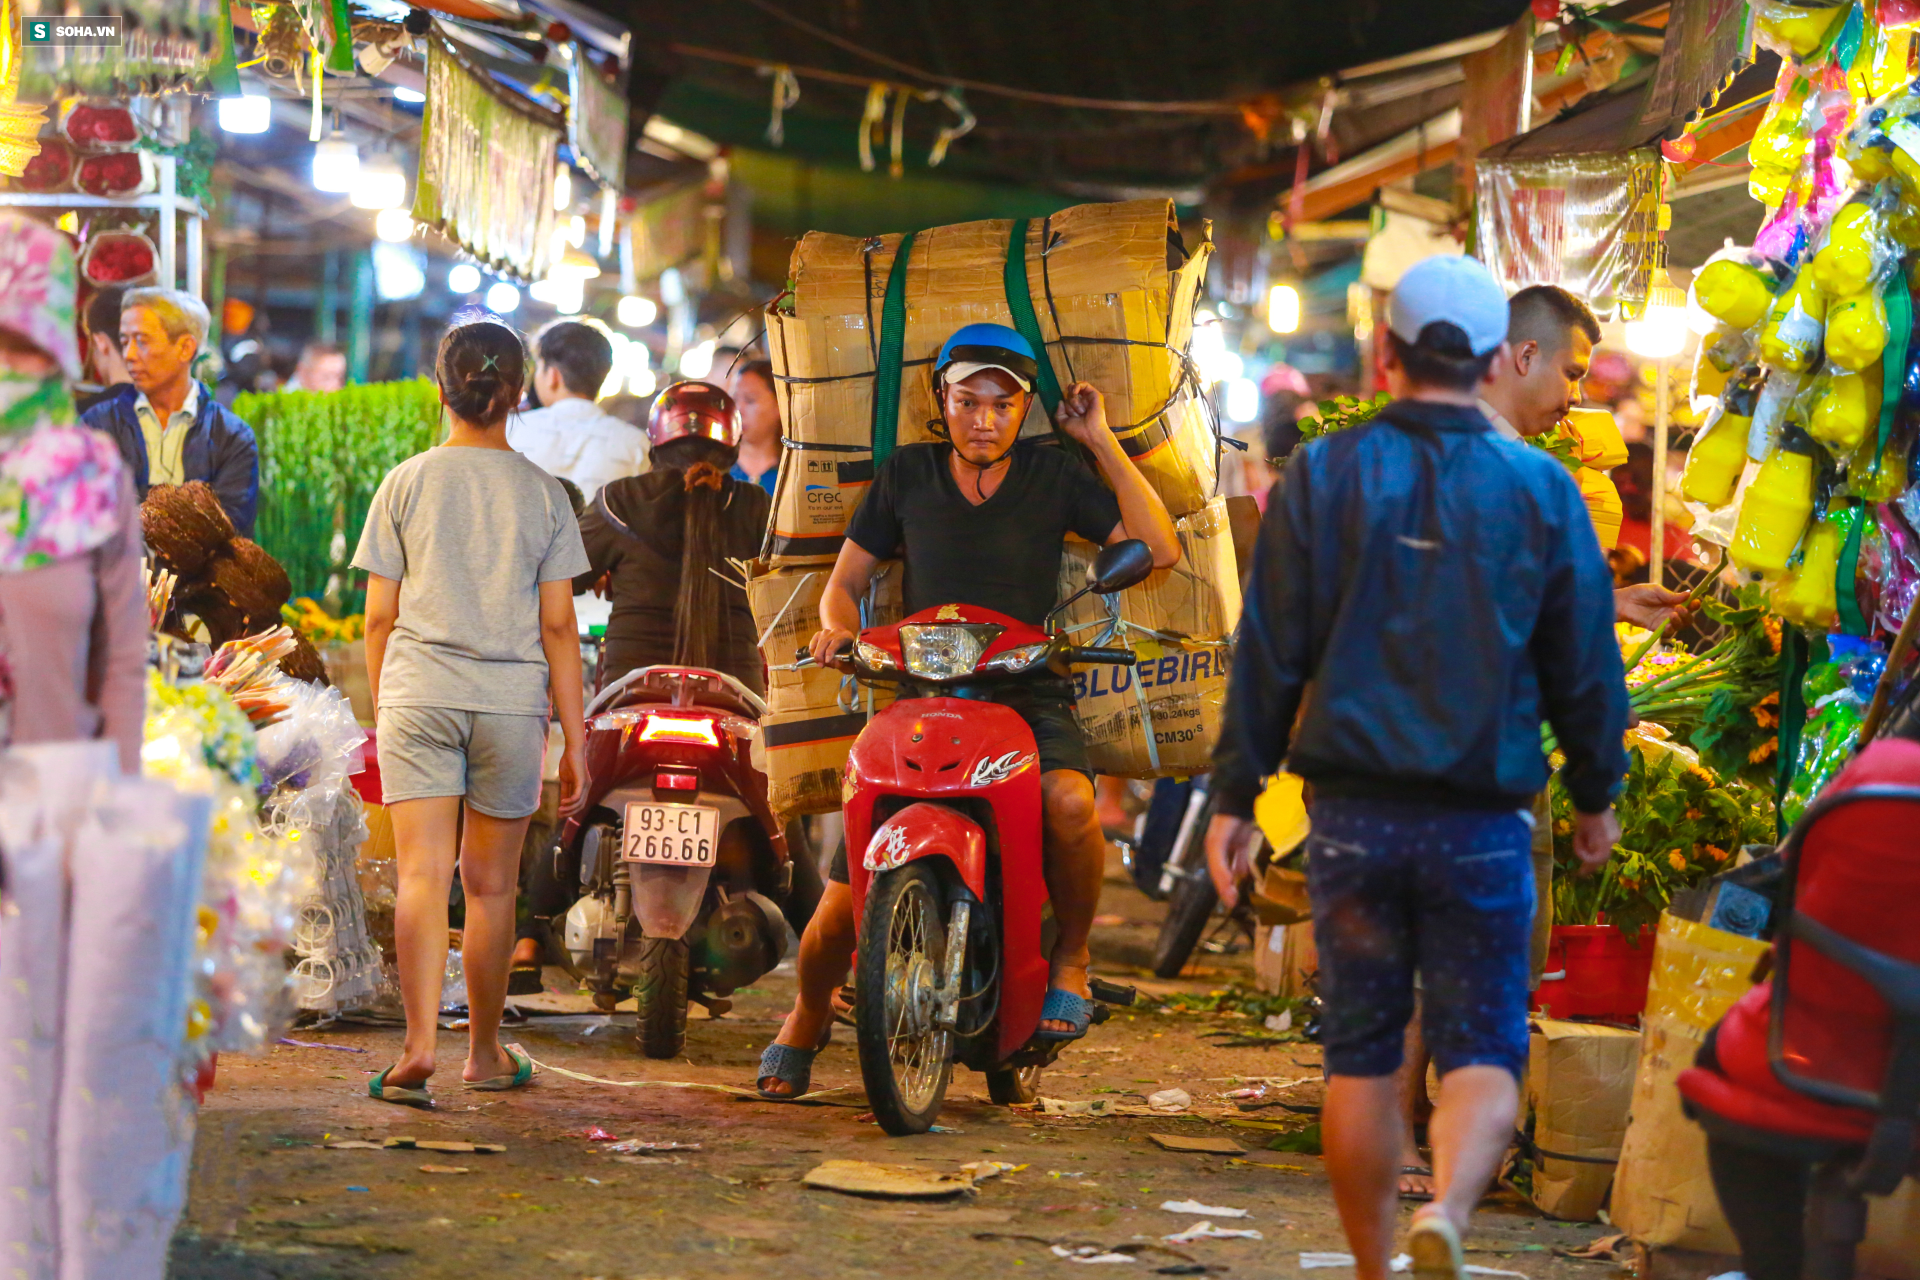 Chợ hoa 30 năm không ngủ ở Sài Gòn nhộn nhịp lúc 2 giờ sáng đón ngày 8/3 - Ảnh 1.